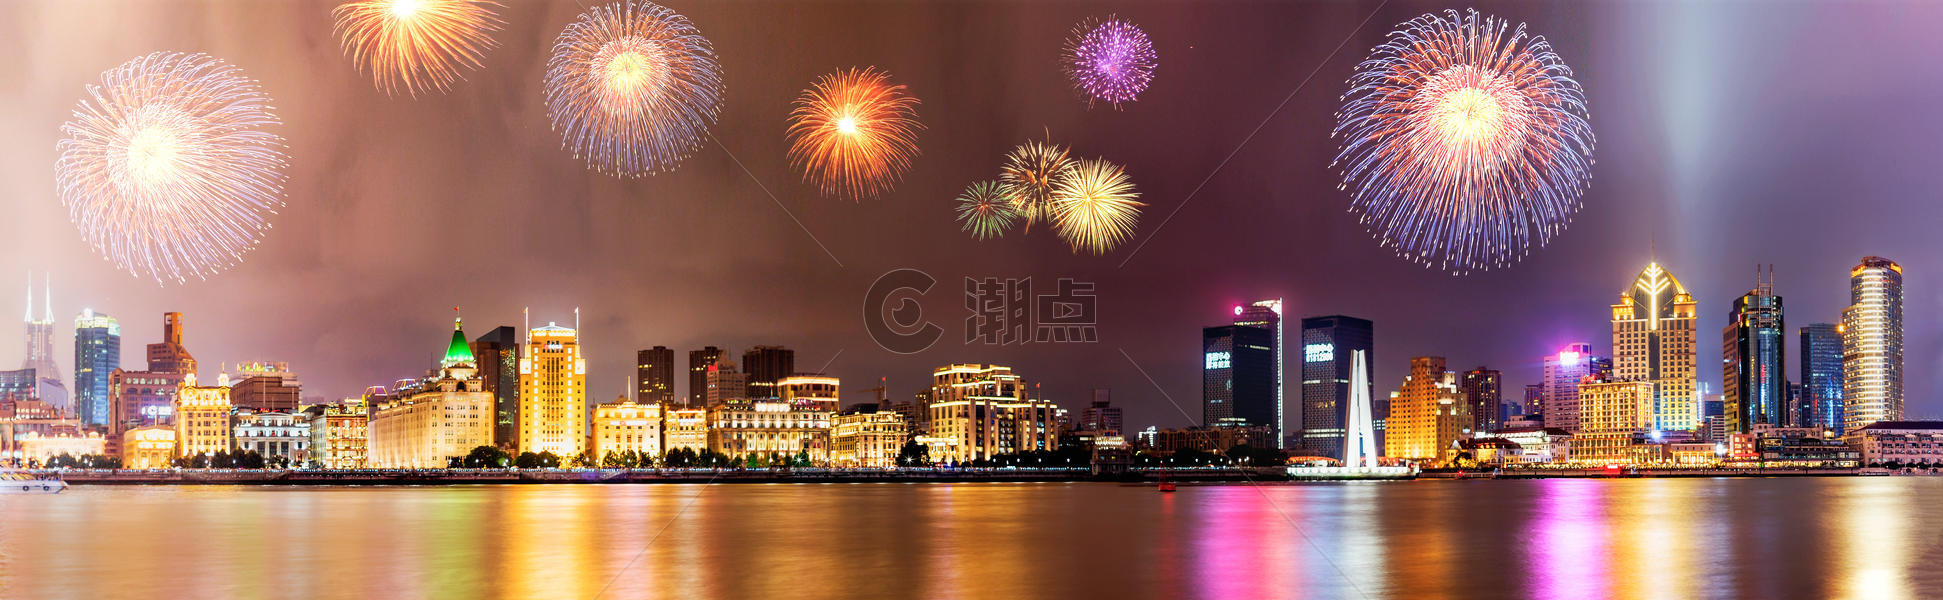 美丽的黄浦江畔夜景图片素材免费下载